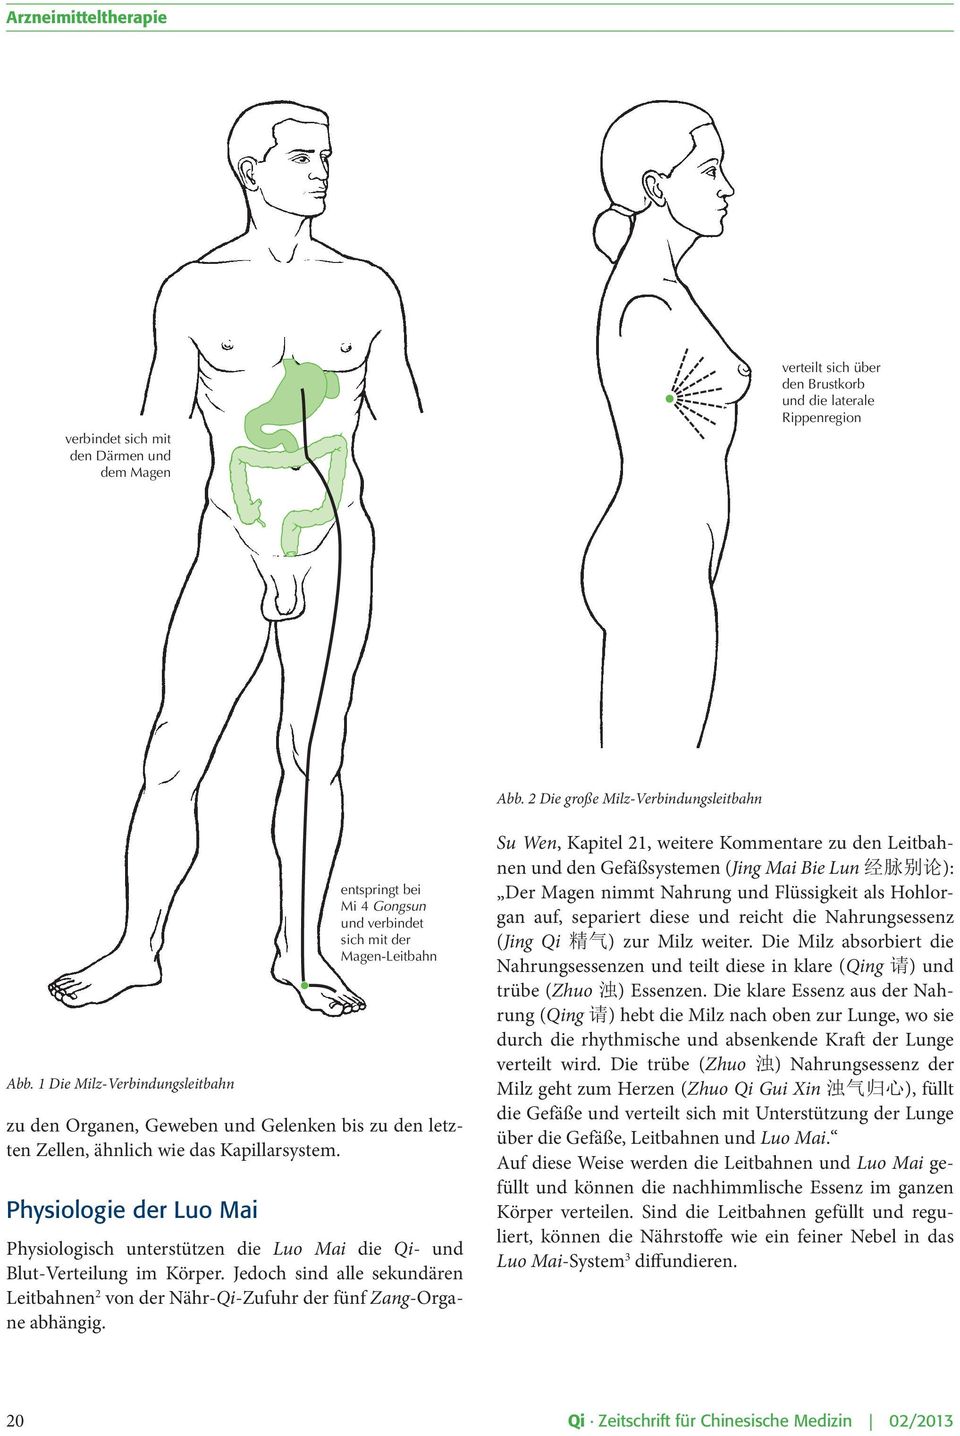 Physiologie der Luo Mai entspringt bei Mi 4 Gongsun und verbindet sich mit der Magen-Leitbahn Physiologisch unterstützen die Luo Mai die Qi- und Blut-Verteilung im Körper.